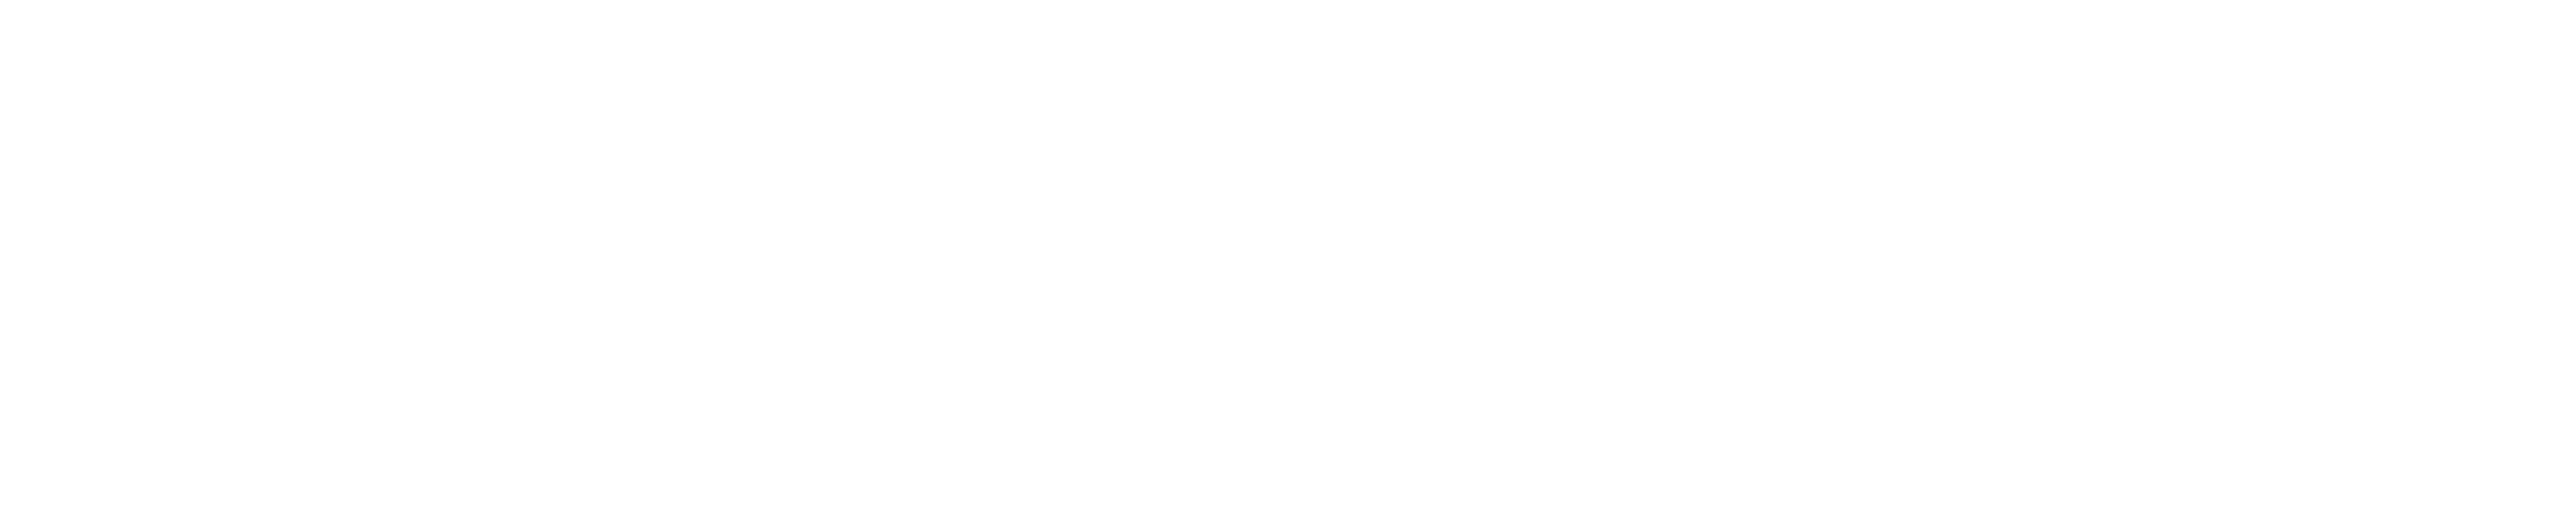 eCommerce platform woocommerce logo